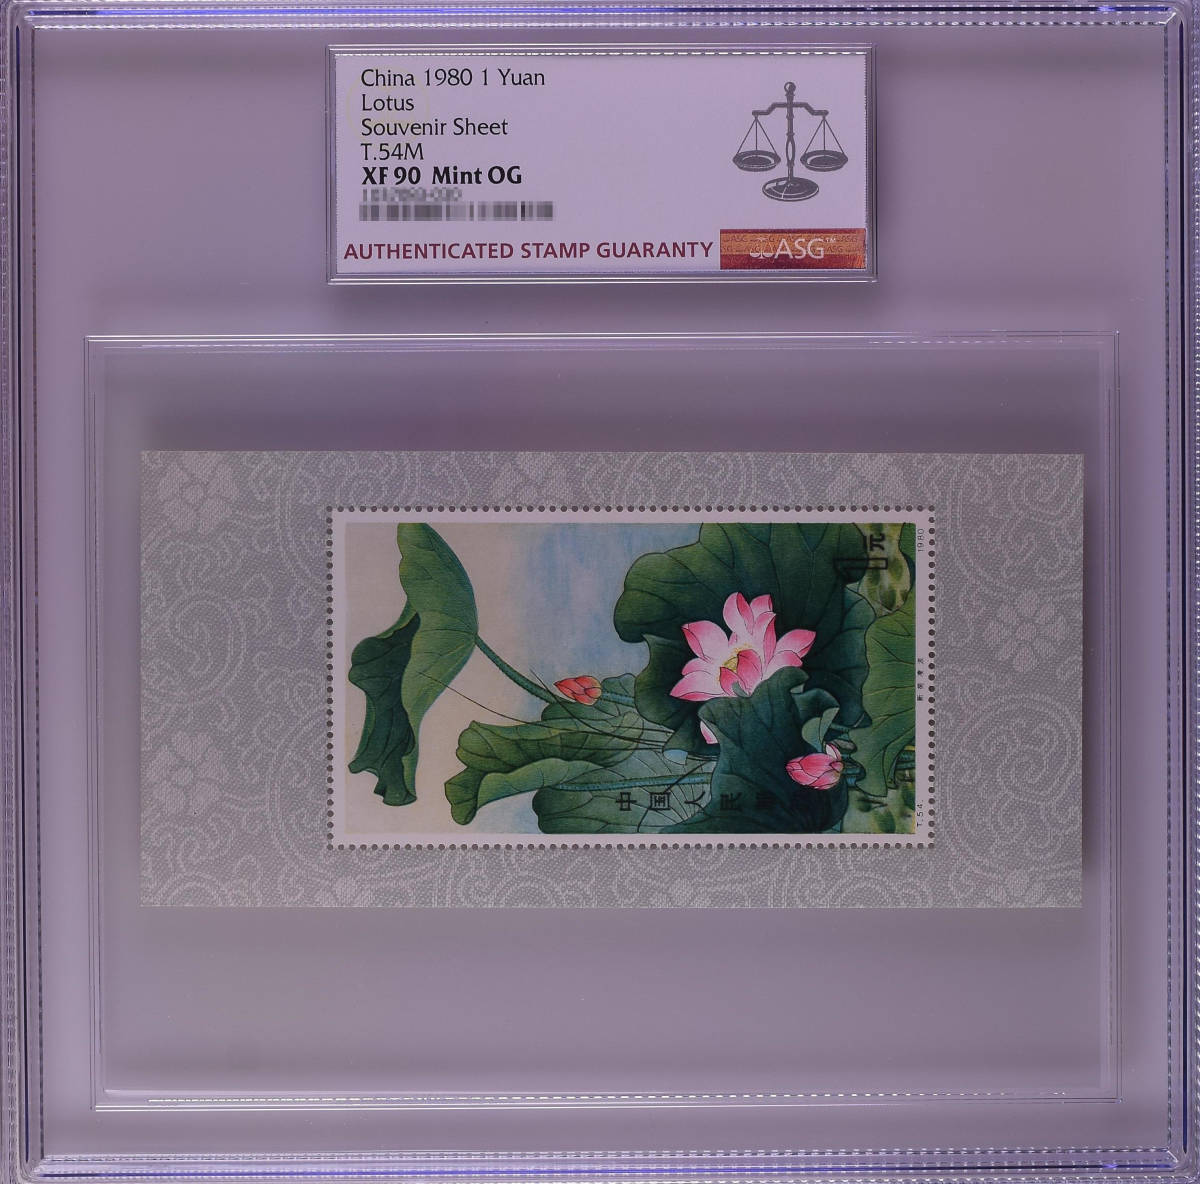 【記念切手】中国切手収蔵『中国人民郵政・ 新荷凌波 1980年（T.54M）』小型シート146mm×70mm ASG XF90 Mint OG 本物希少品 Z81